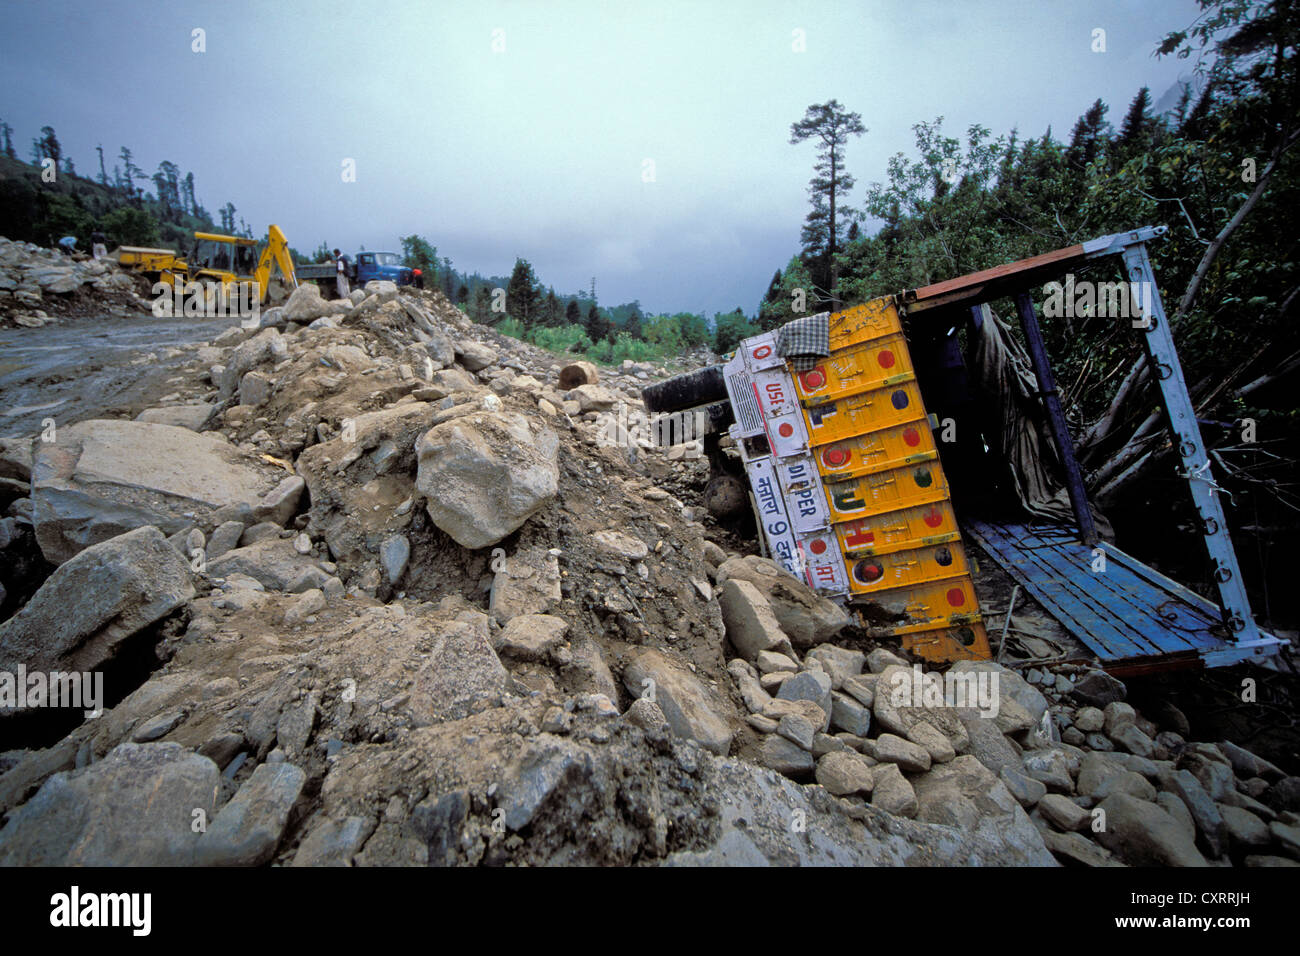 Partiellement enterré chariot après un glissement de terrain, détruit road, Rohtang, Manali-Leh-autoroute, l'Himachal Pradesh, l'Himalaya Indien Banque D'Images